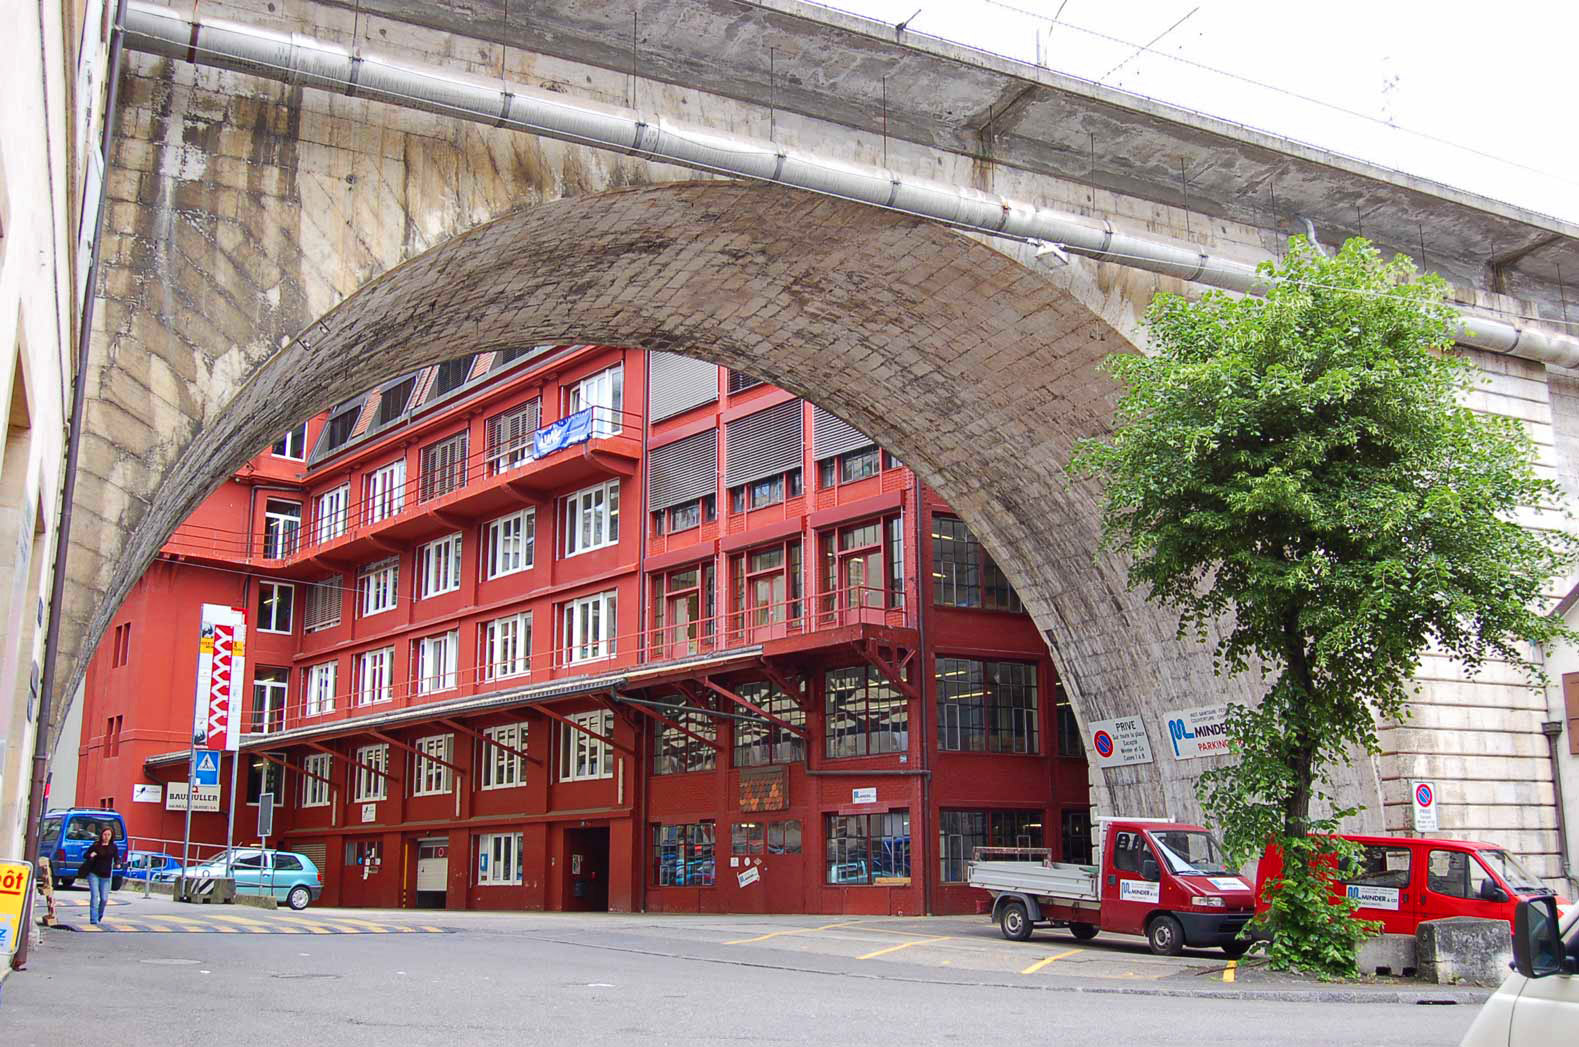 Die Brücke Berthier liegt vor einer roten Fabrik